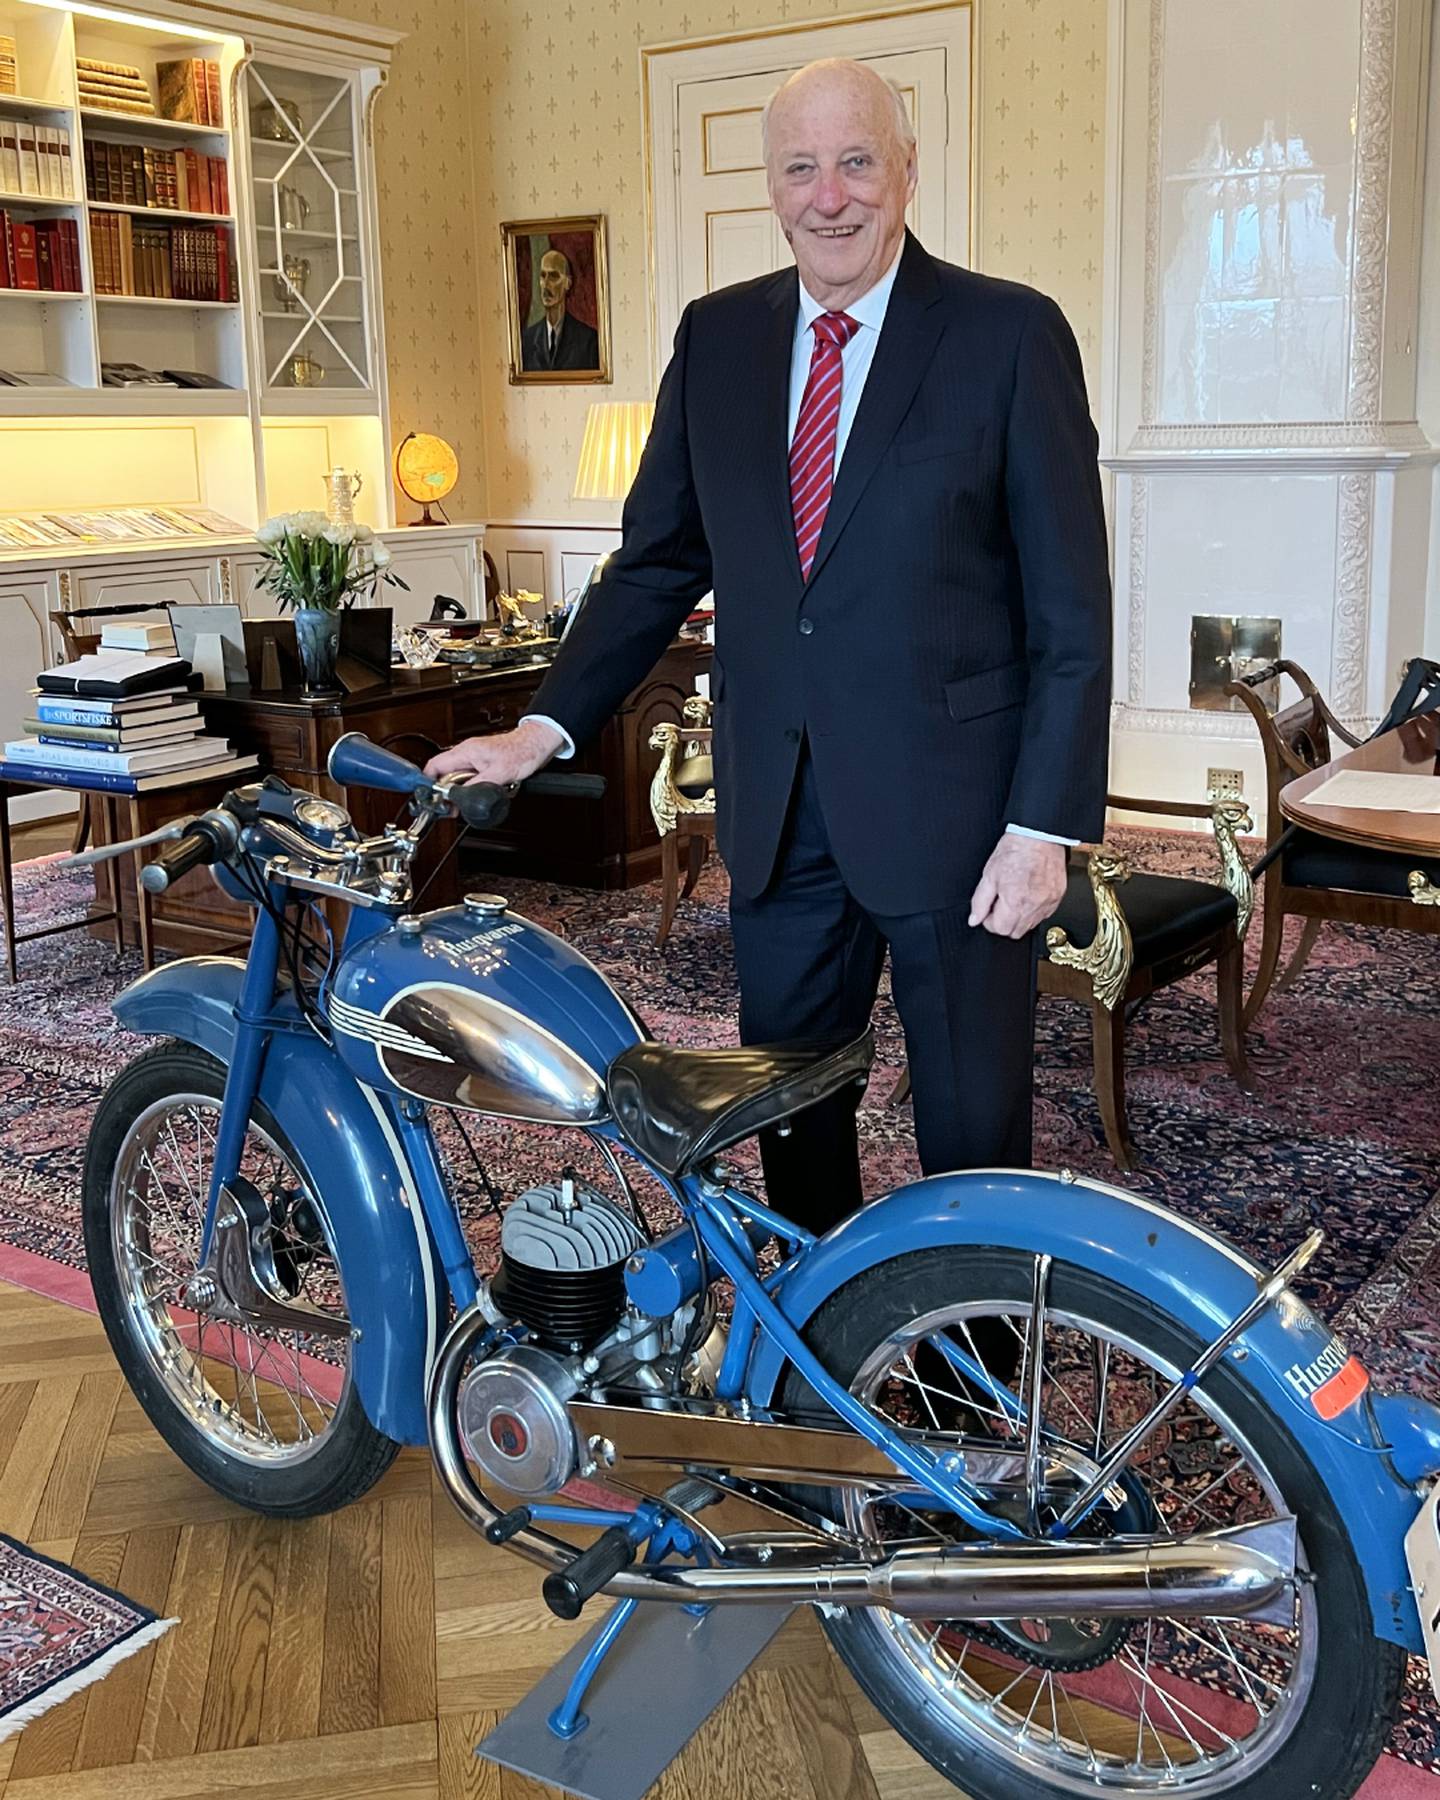 Kongen har fått sin første motorsykkel i gave fra de ansatte ved Det kongelige hoff. Foto: Hennes Majestet Dronningen / NTB